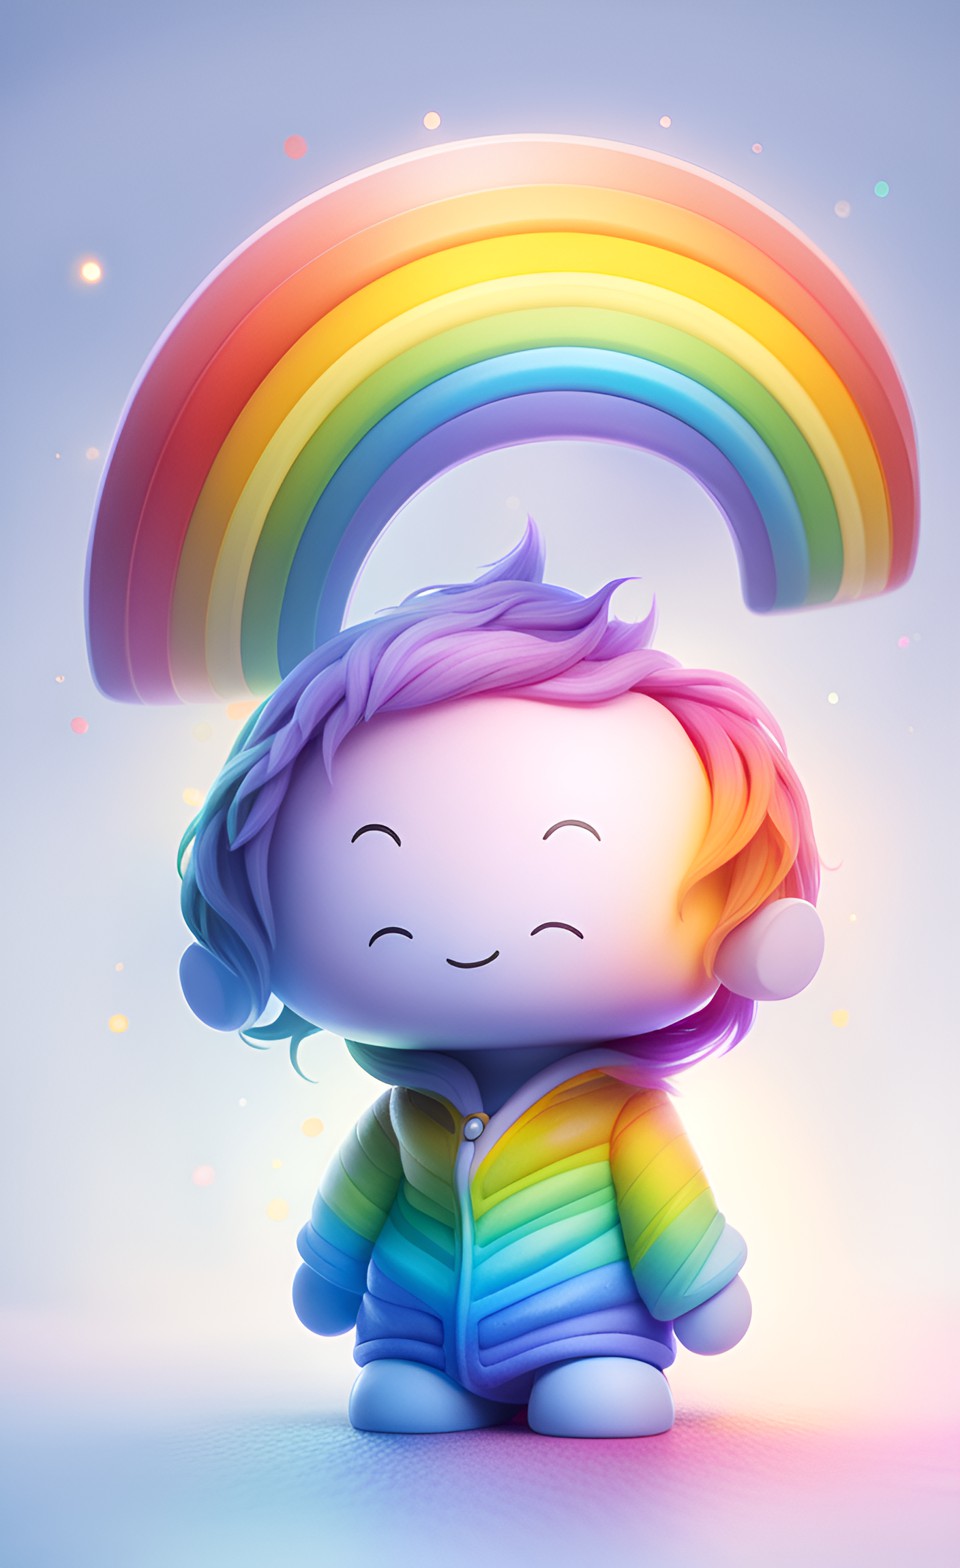 Einstein under the rainbow